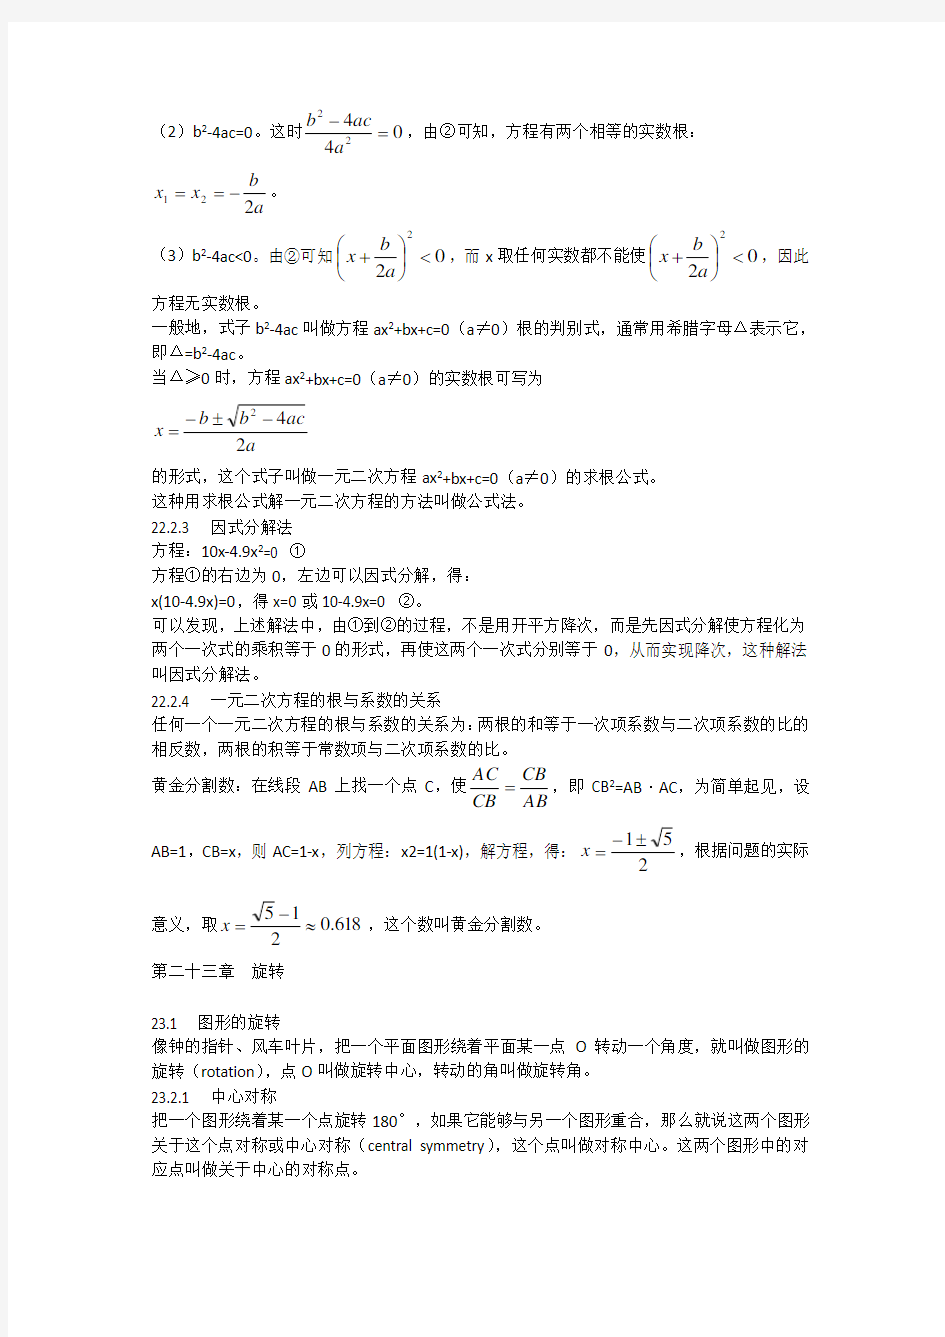 初中数学公式定理大全九年级(上册)